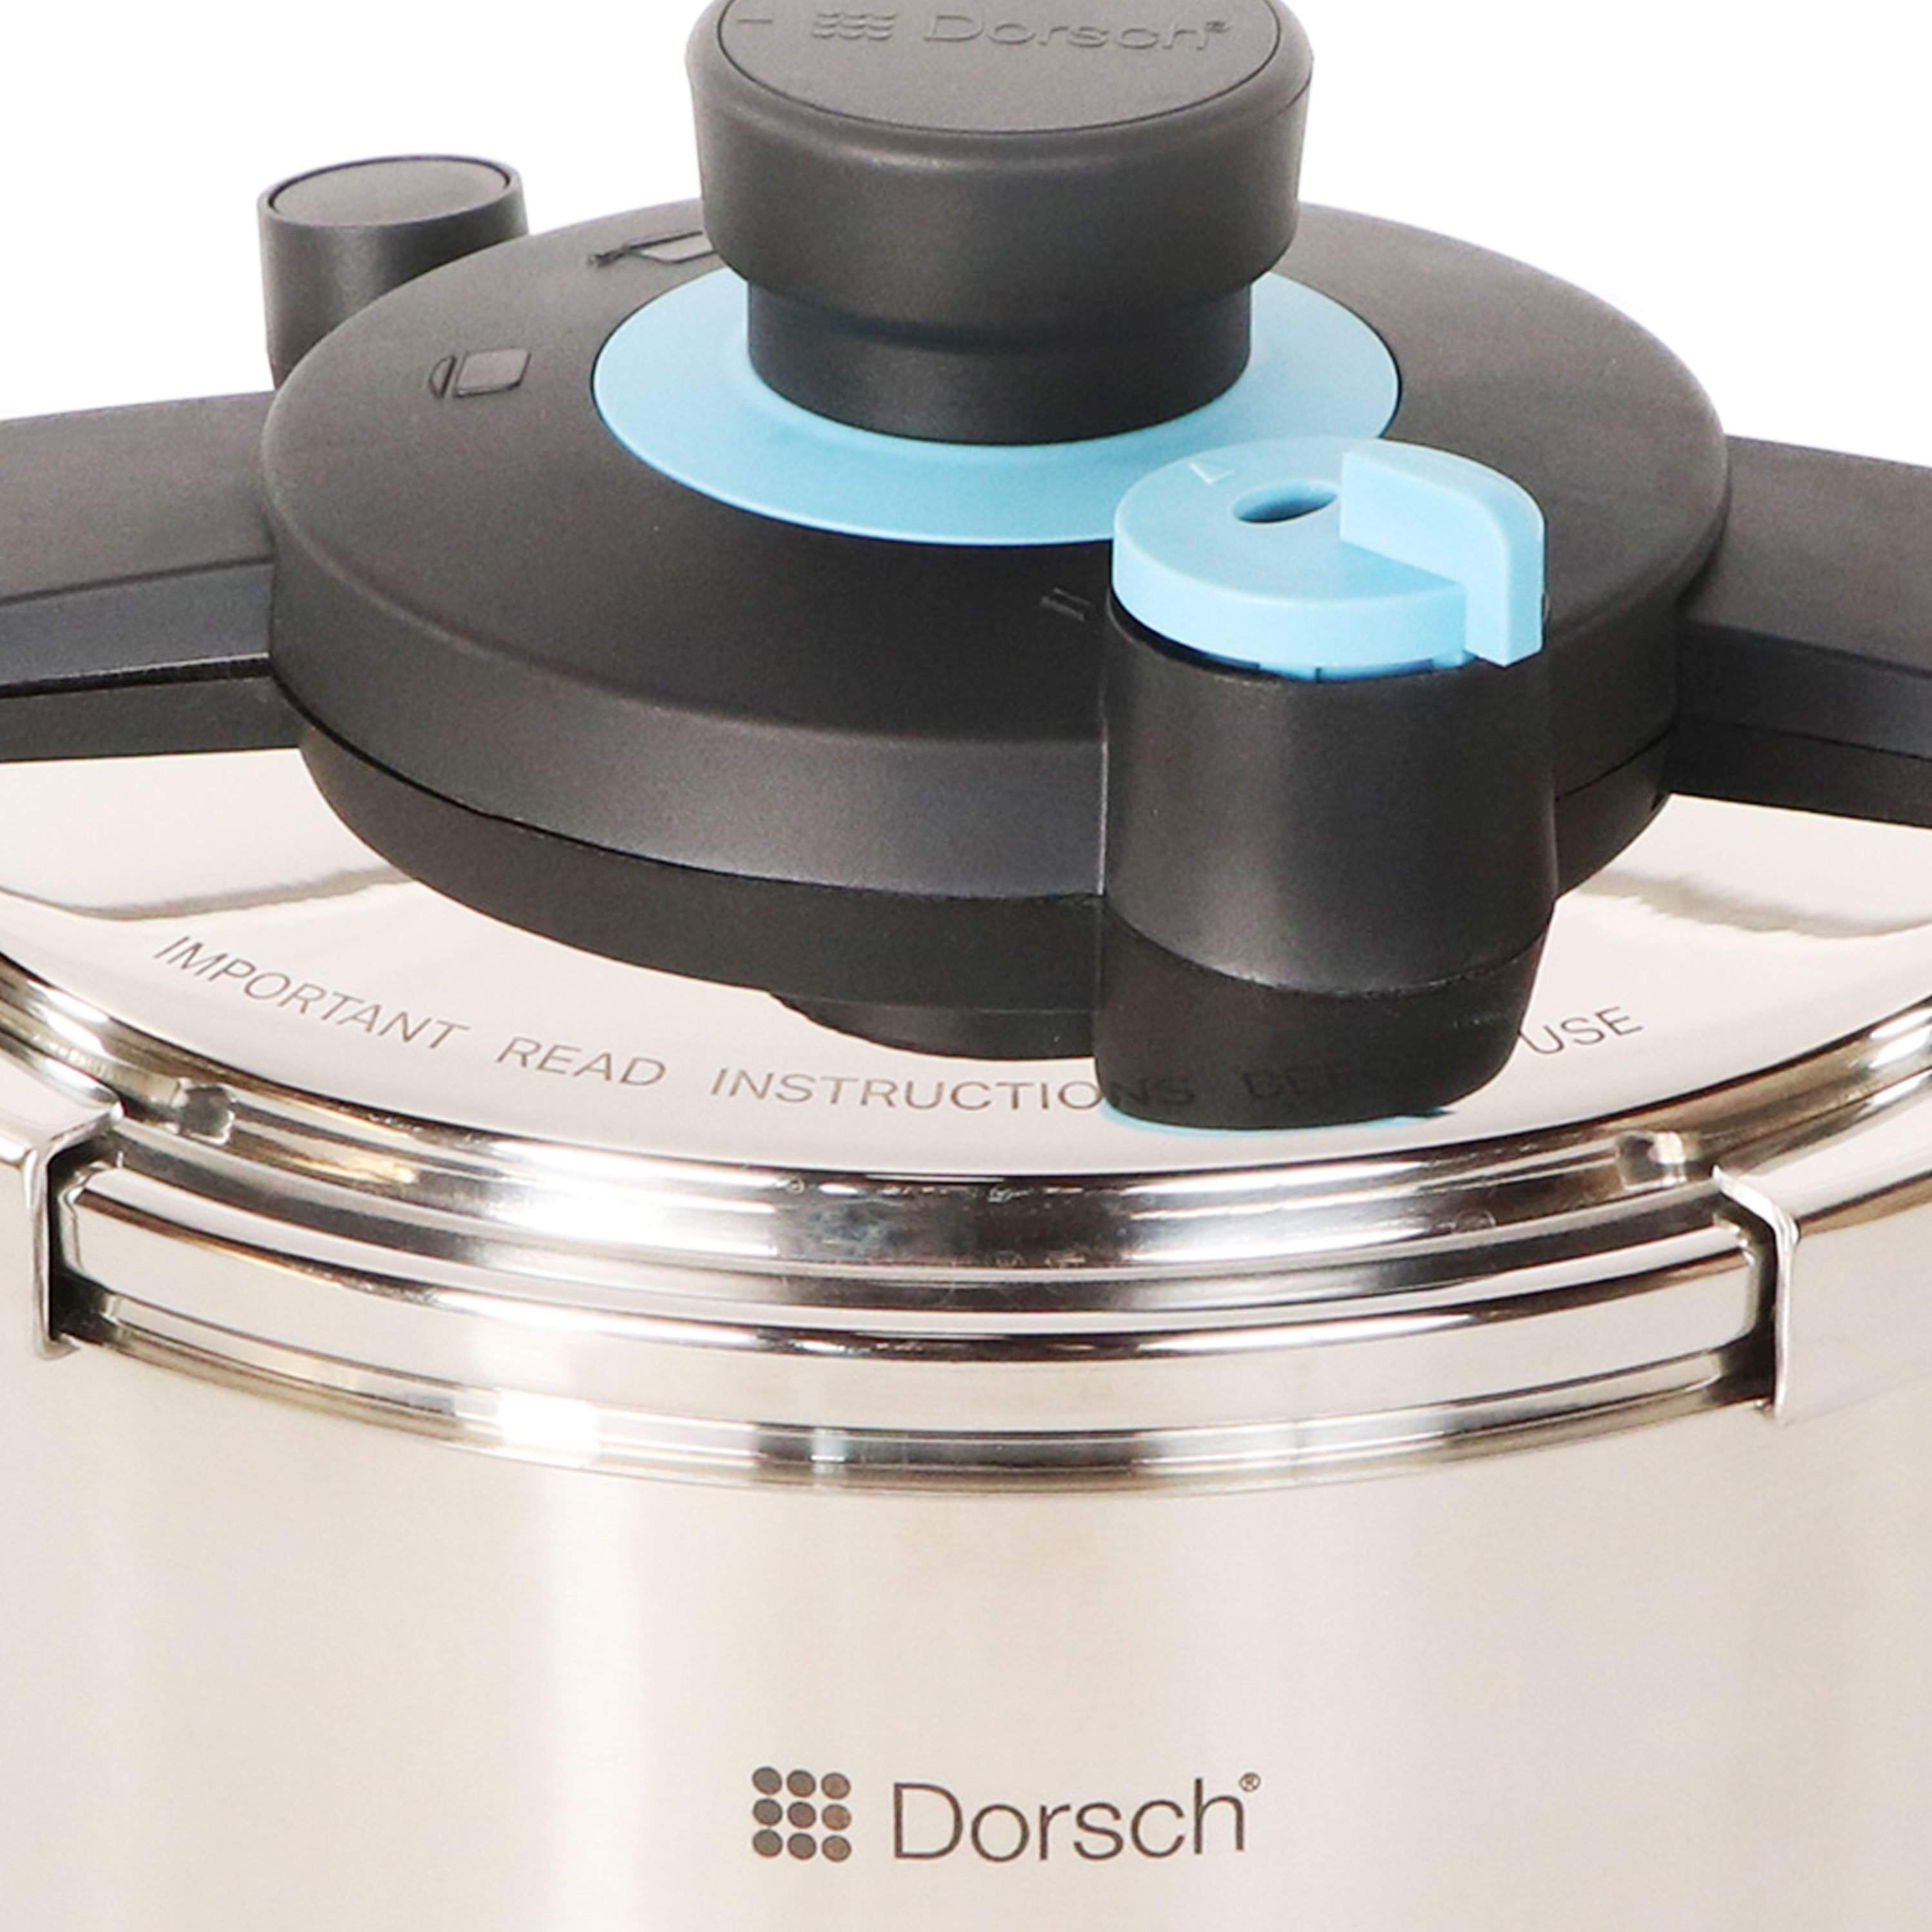 6L & 8L Dorsch GoPress Pressure Cooker-Royal Brands Co-